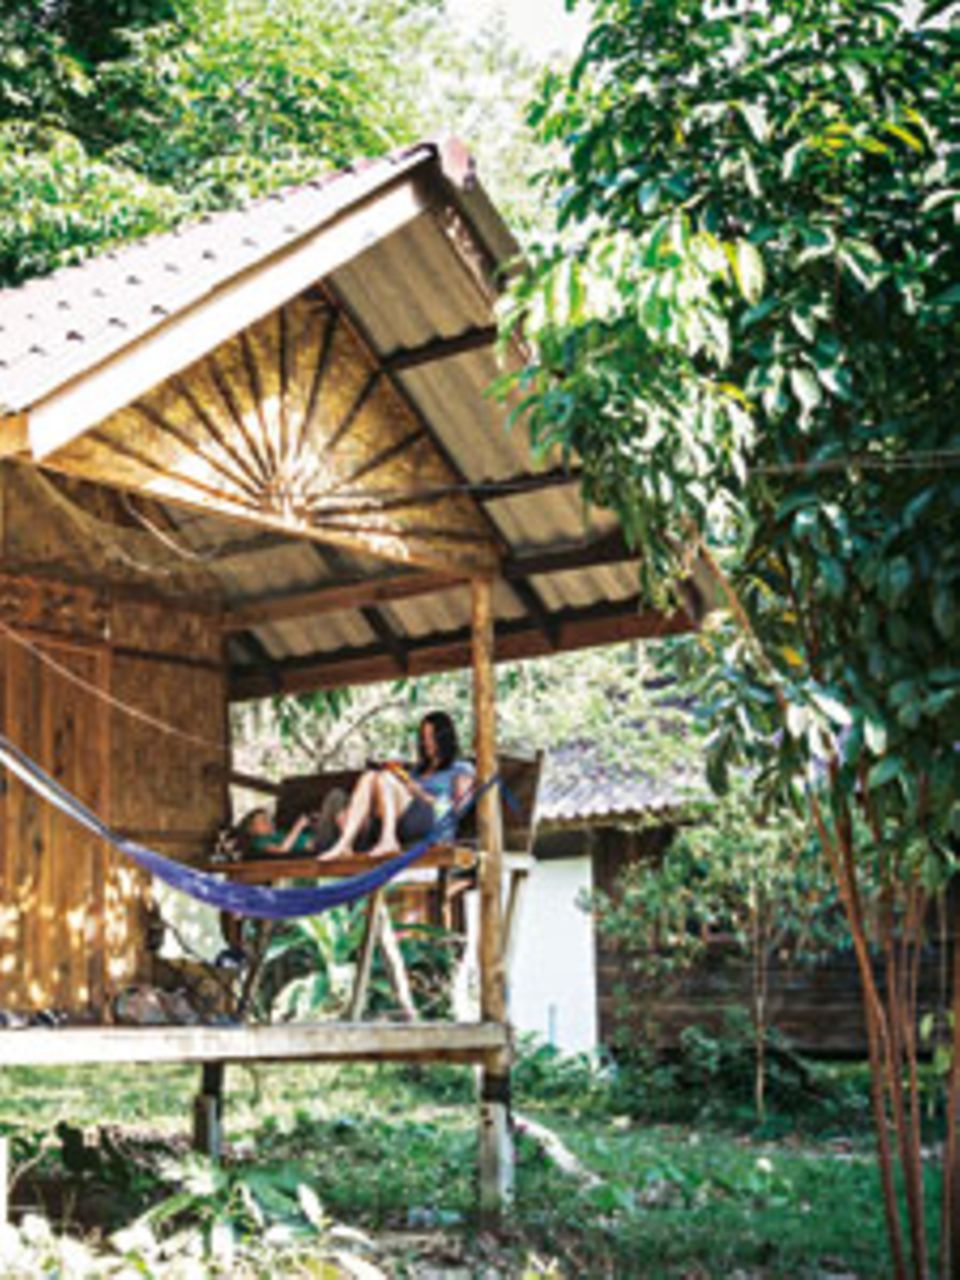 Siesta Thailandia: Während die Mittagssonne auf die Insel Koh Phayam brennt, verziehen sich Susanne und Fred zum Lesen auf ihre Veranda. Wenn die Mama Glück hat, liest der Sohn auch mal vor